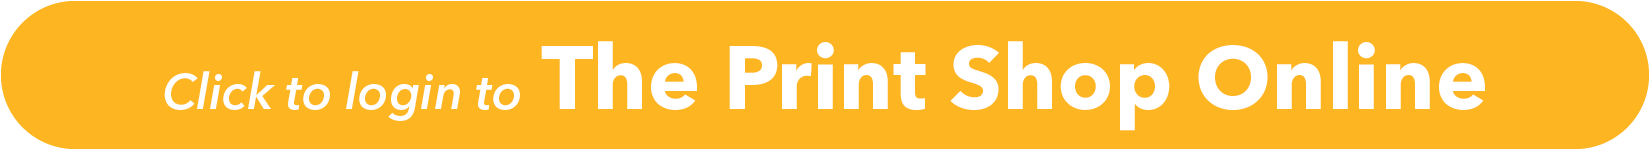 The Print Shop Online button